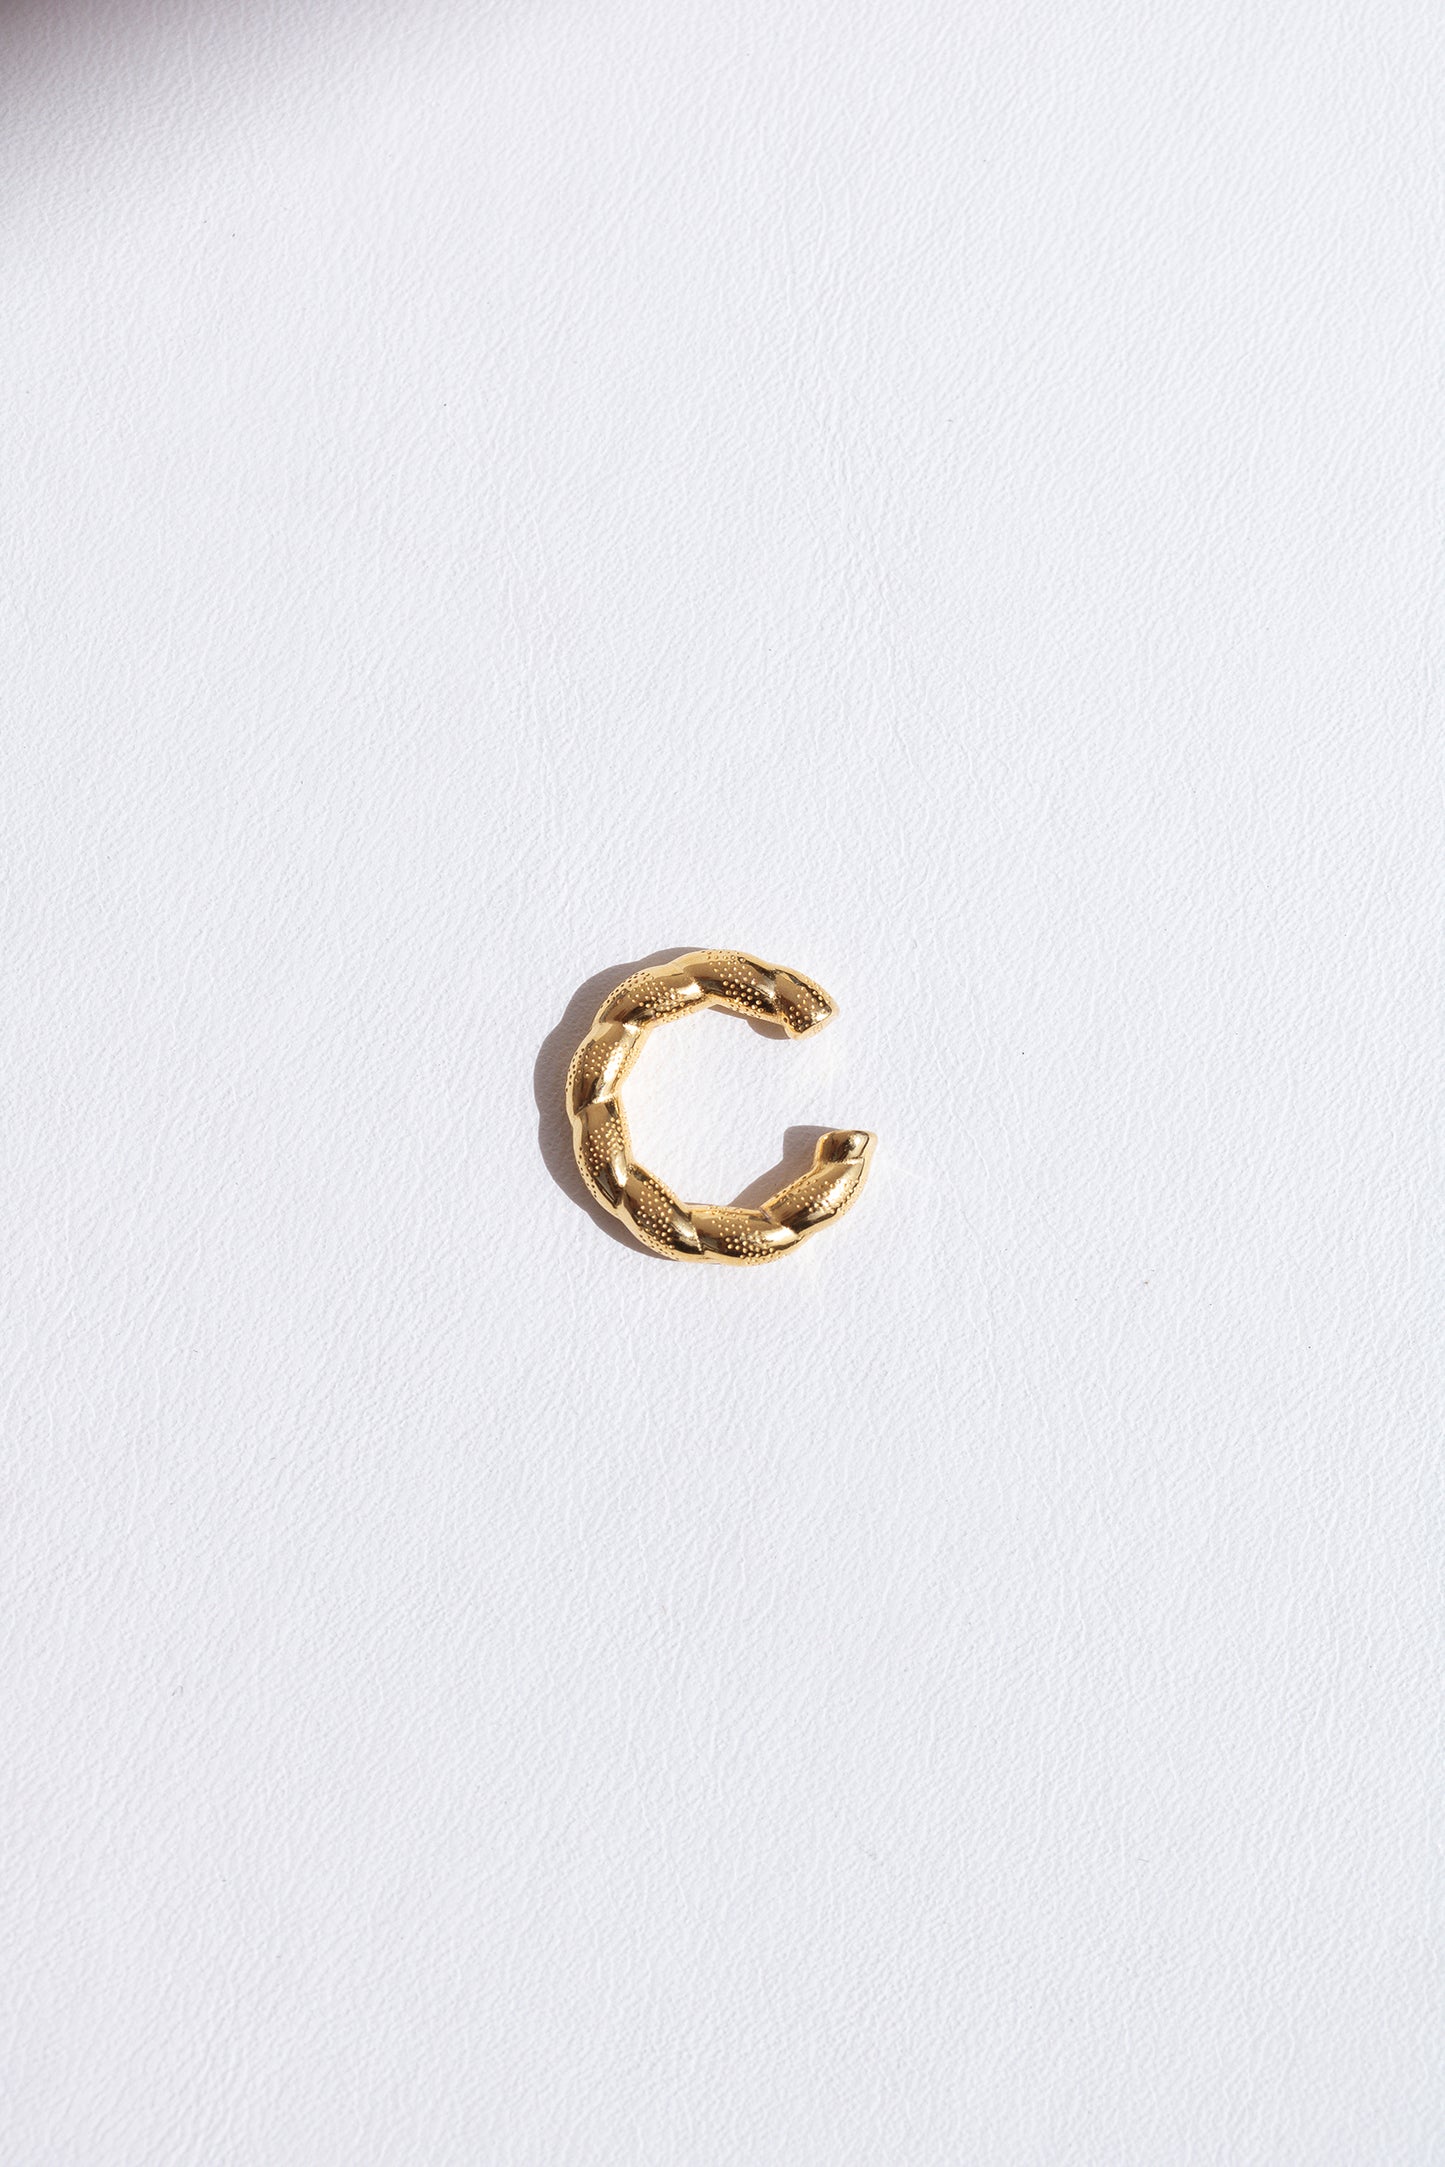 DEBBIE CUFF GOLD - Puffed Gold Ear Cuff